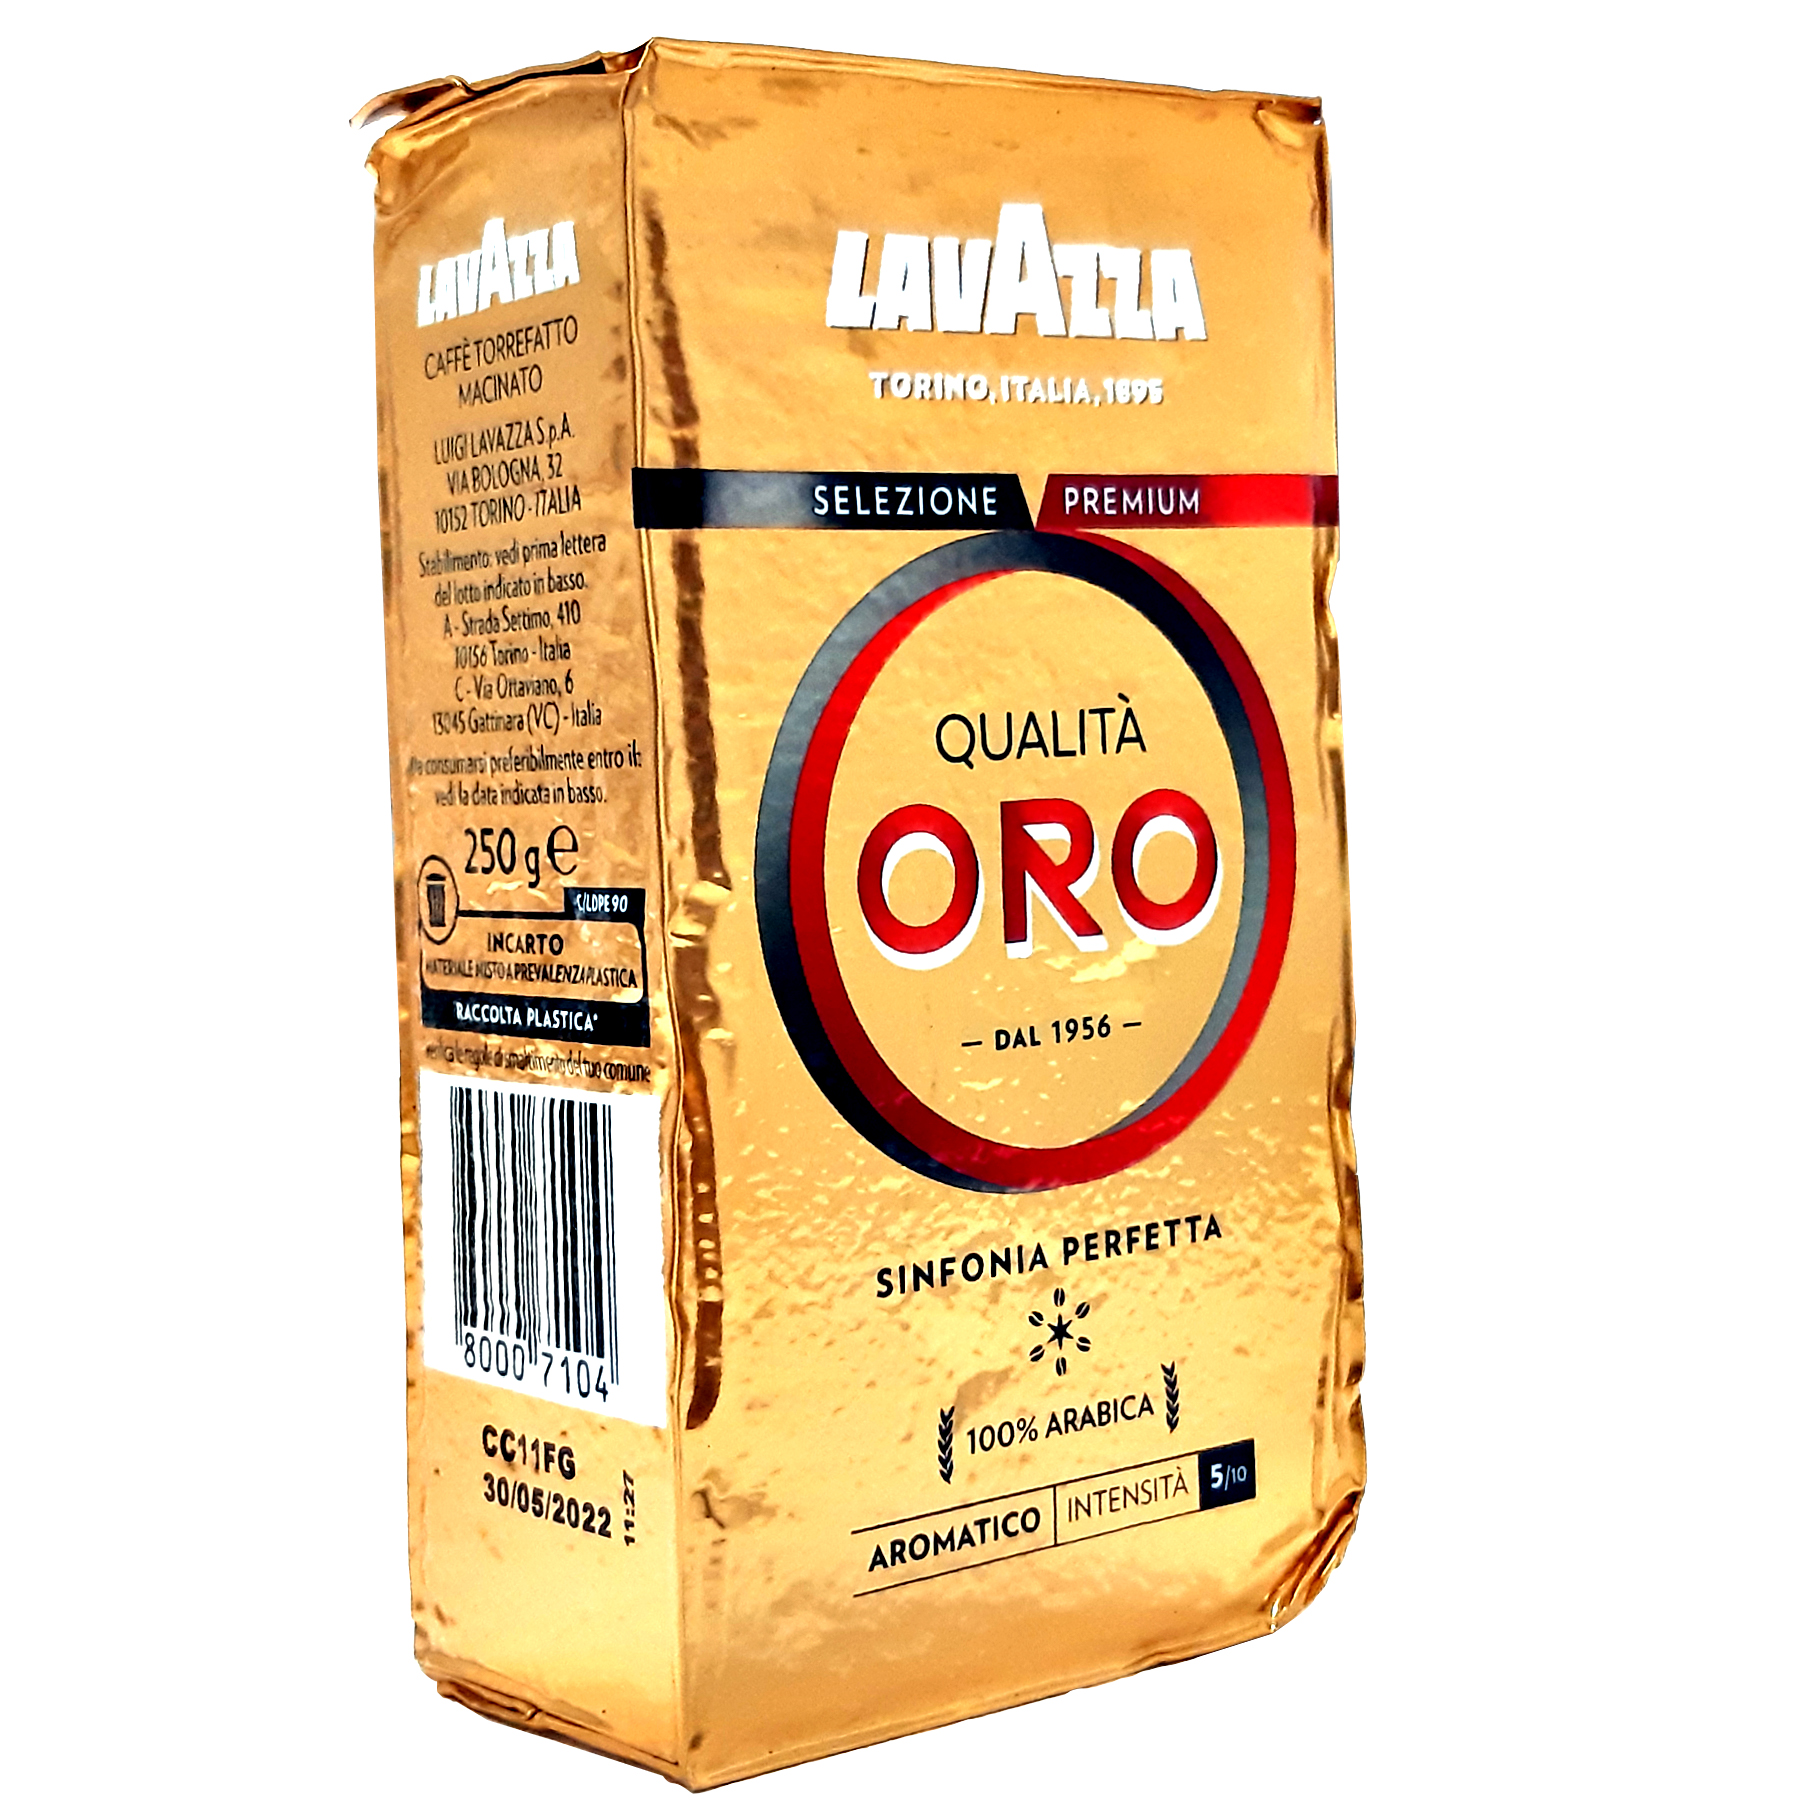 پودر قهوه Qualità Oro لاواتزا - 250 گرم